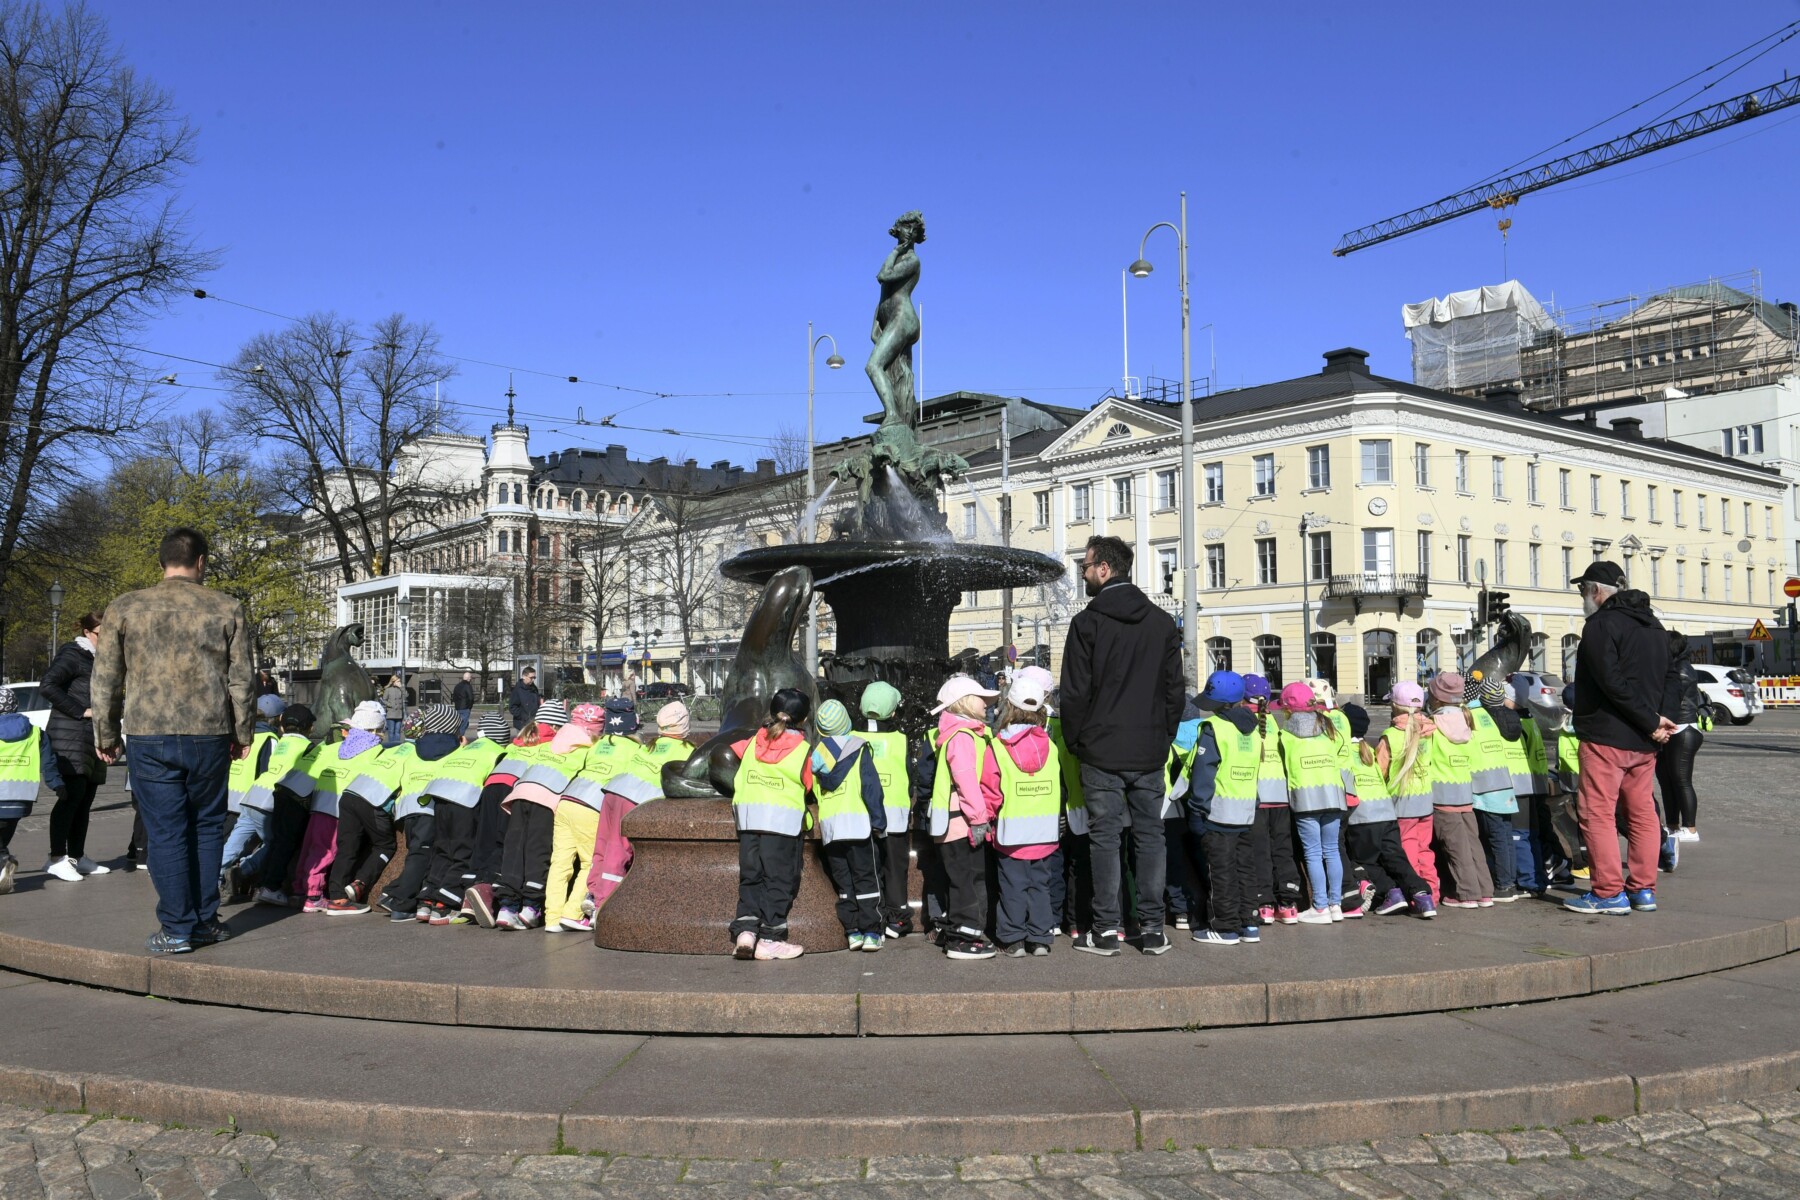 En una plaza rodeada de edificios, varias decenas de niños y profesores rodean una estatua de bronce situada sobre un alto pedestal.